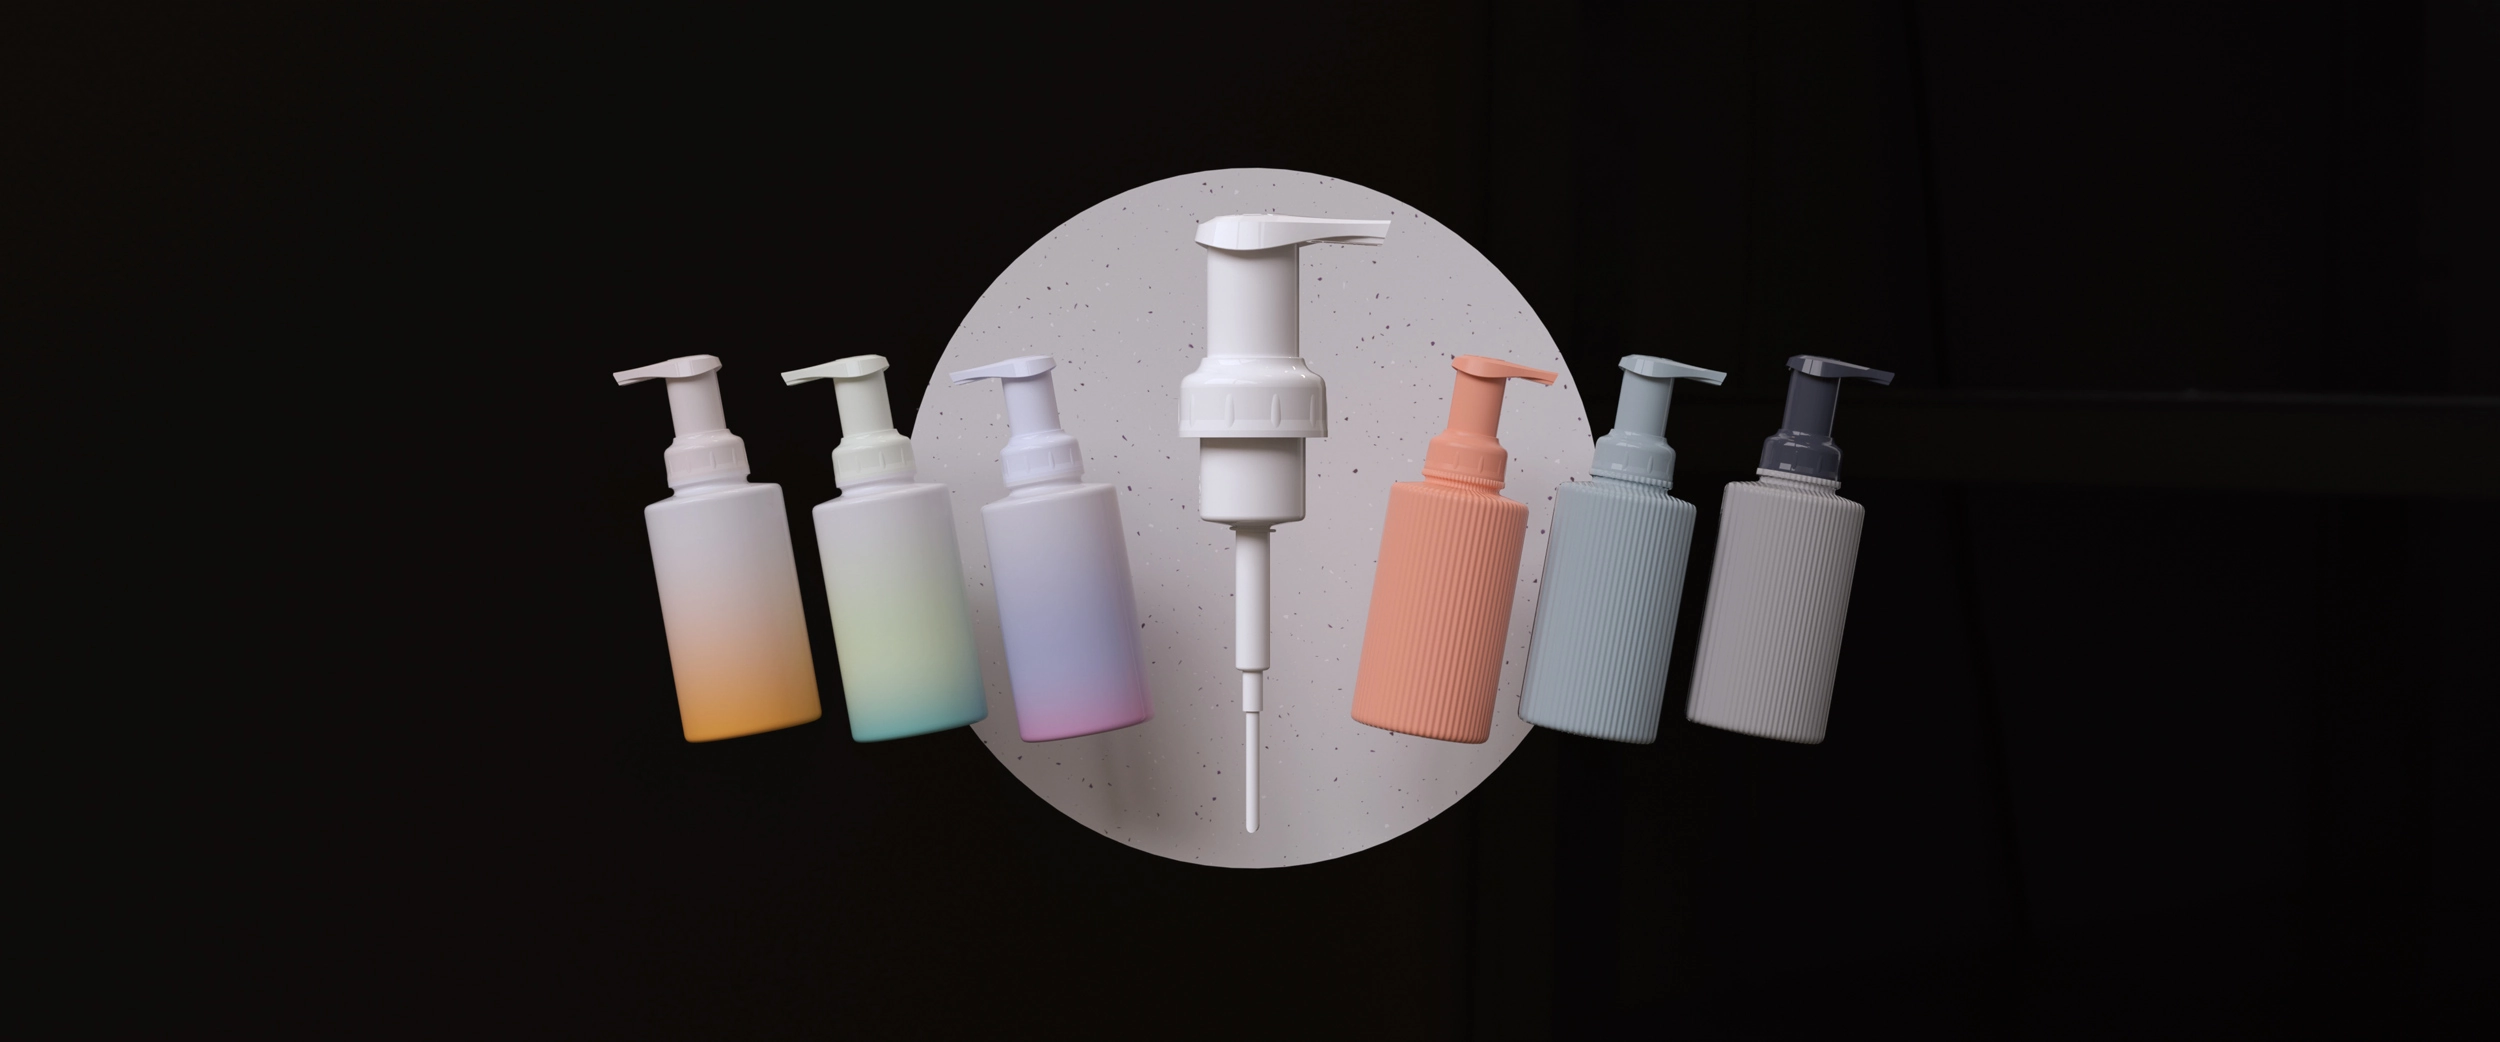 Flaschen mit Cloud Bottle pumpen in verschiedenen Farben